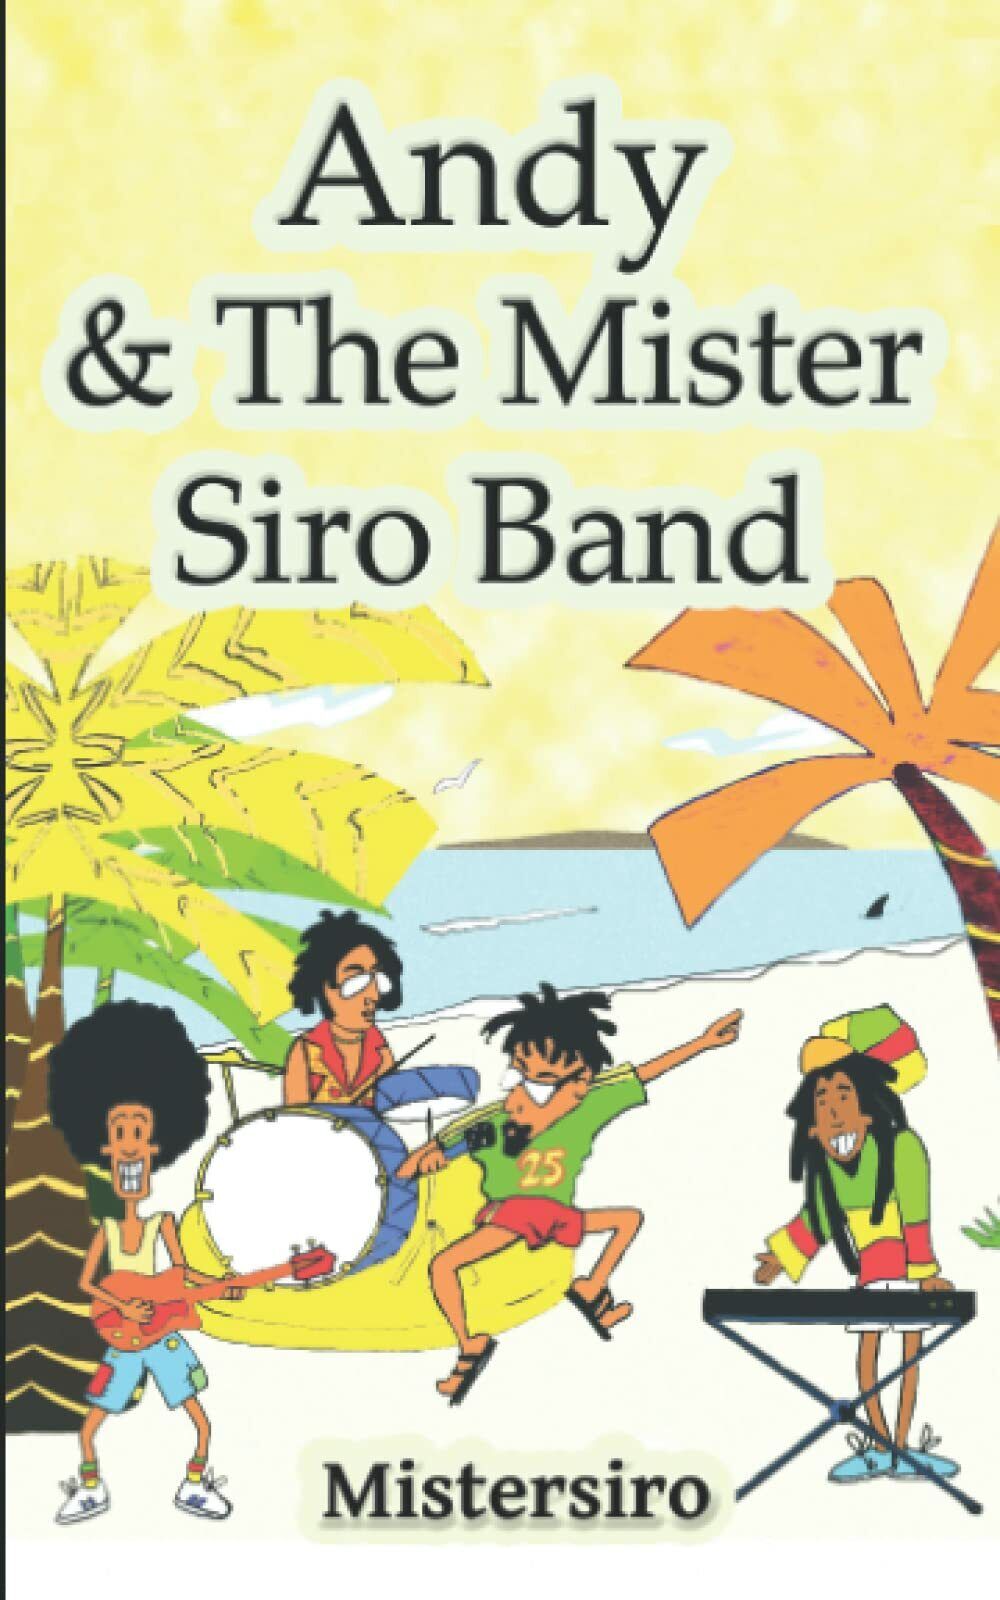 Andy & The Mister Siro Band: Racconto di fantasia su una band musicale formatasi libro usato